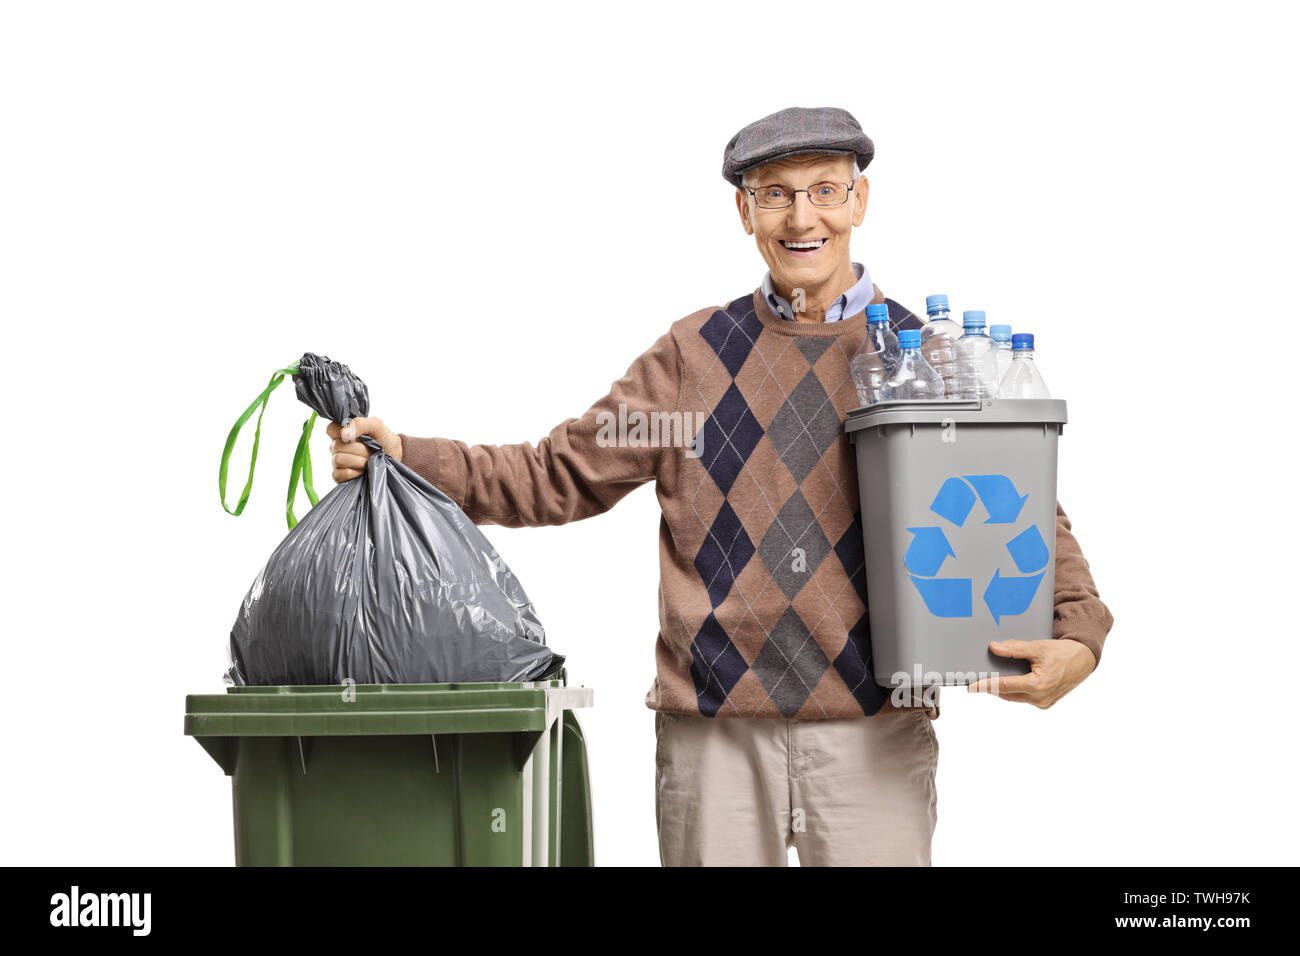 Uomo anziano con un contenitore di riciclaggio gettando un sacco di immondizia in un cestino isolato su sfondo bianco Foto Stock